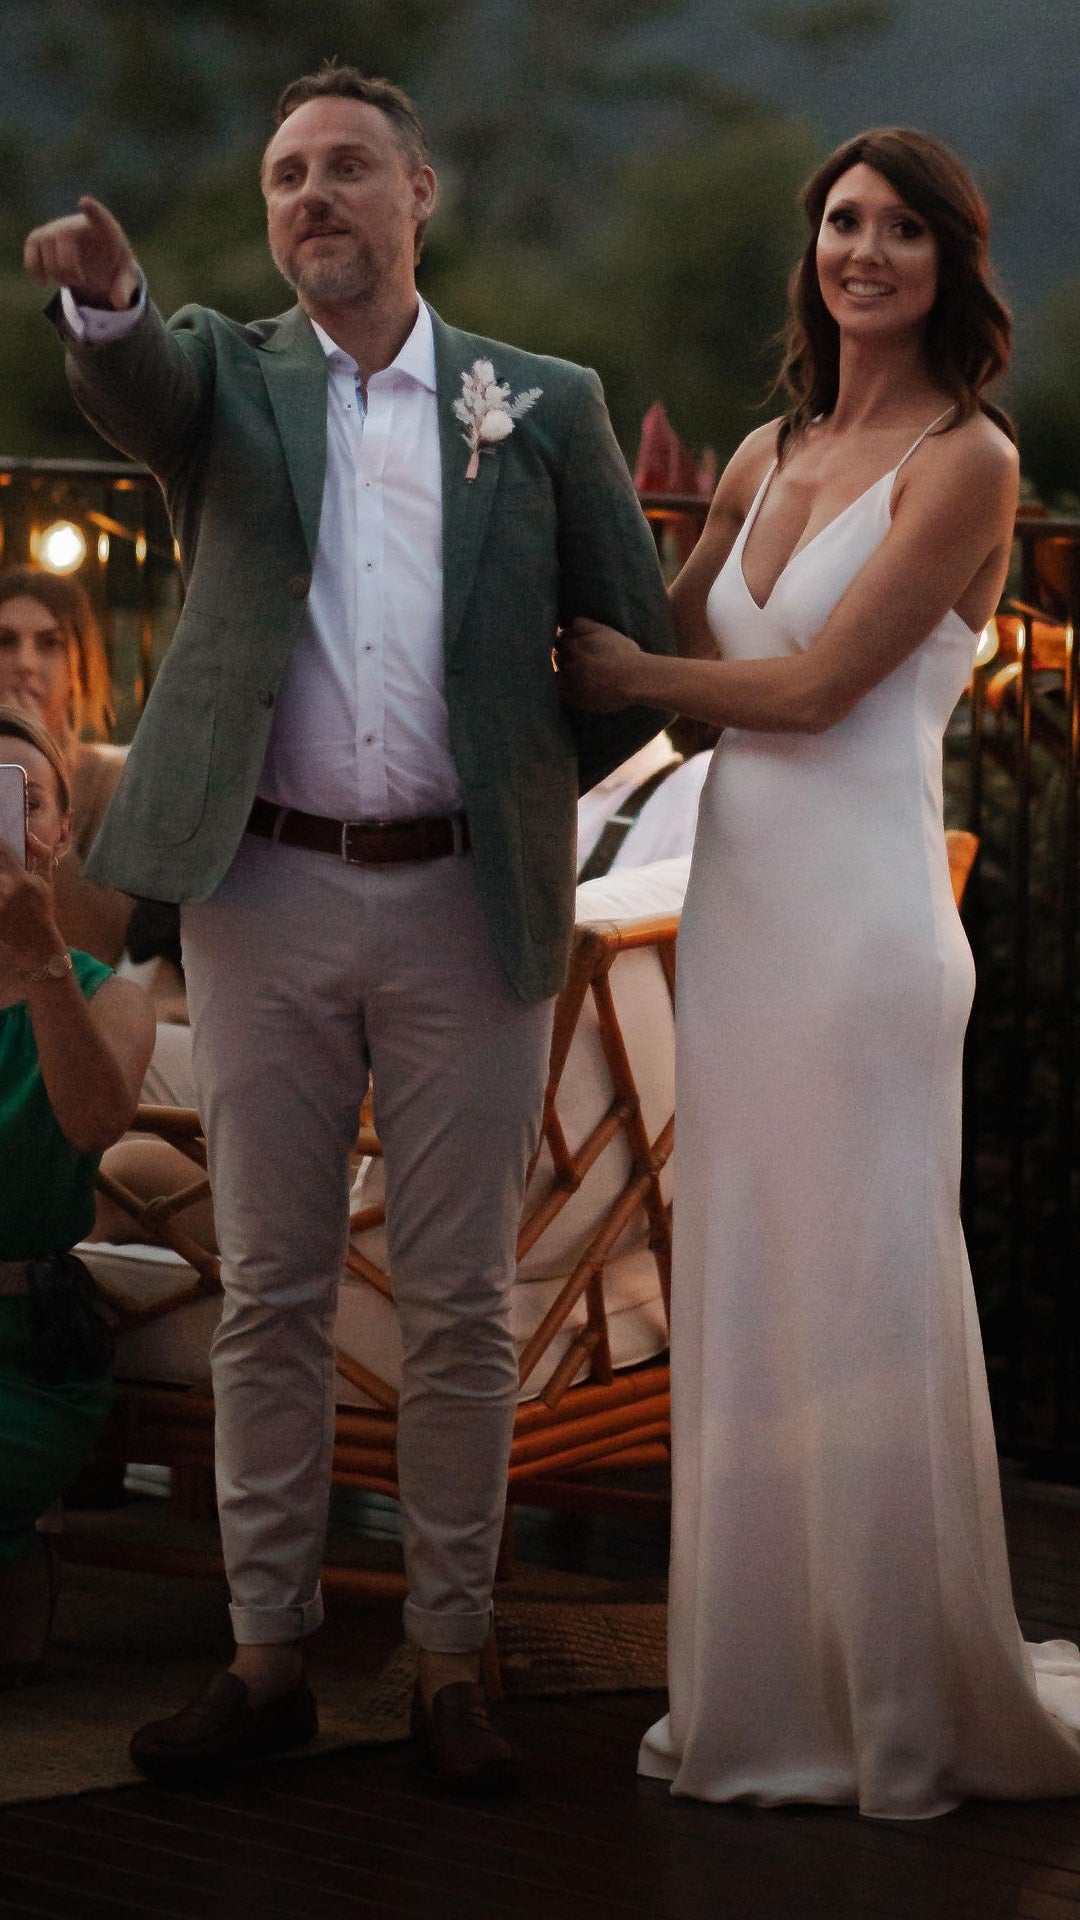 Aaron & Alana's Wedding | Men's Wedding Suits Melbourne